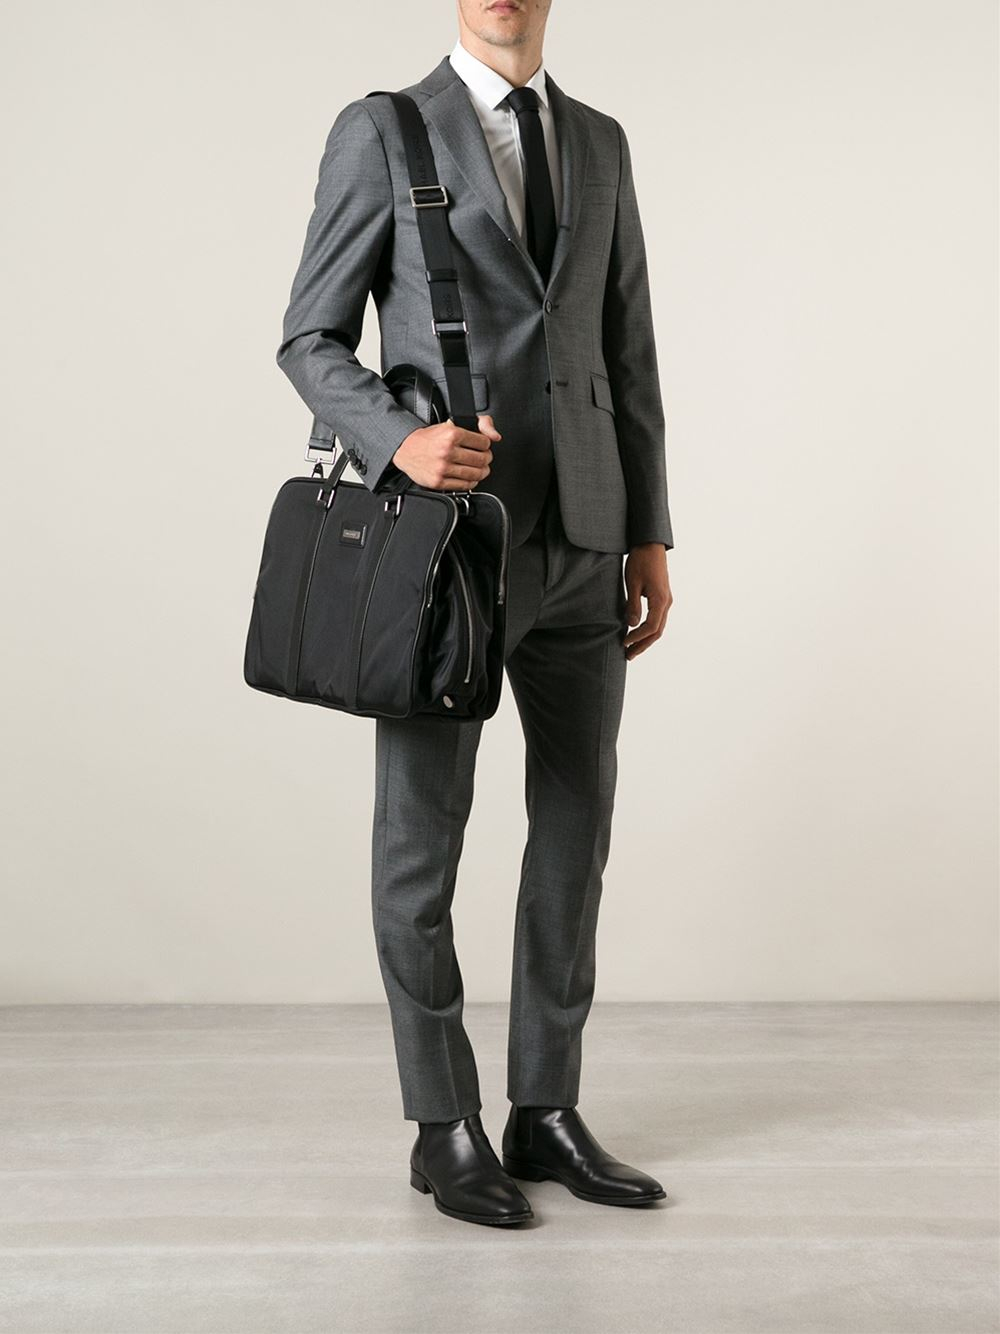 Michael Kors Laptop Bag in Black for Men - Lyst